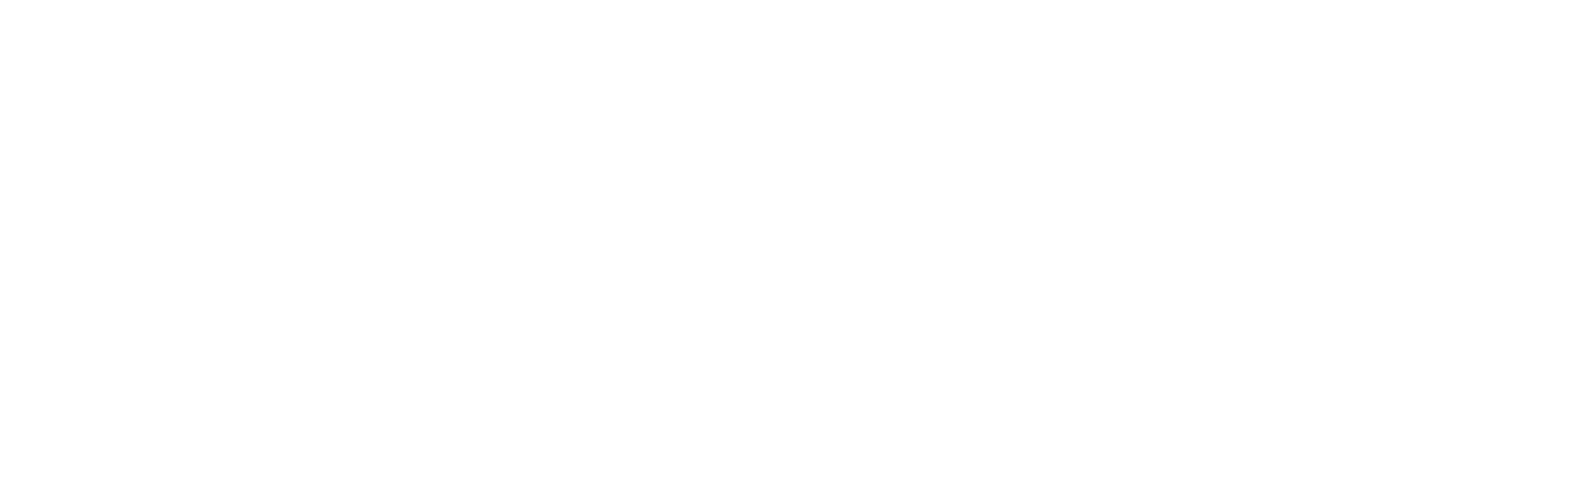 Mullen Automotive logo large for dark backgrounds (transparent PNG)